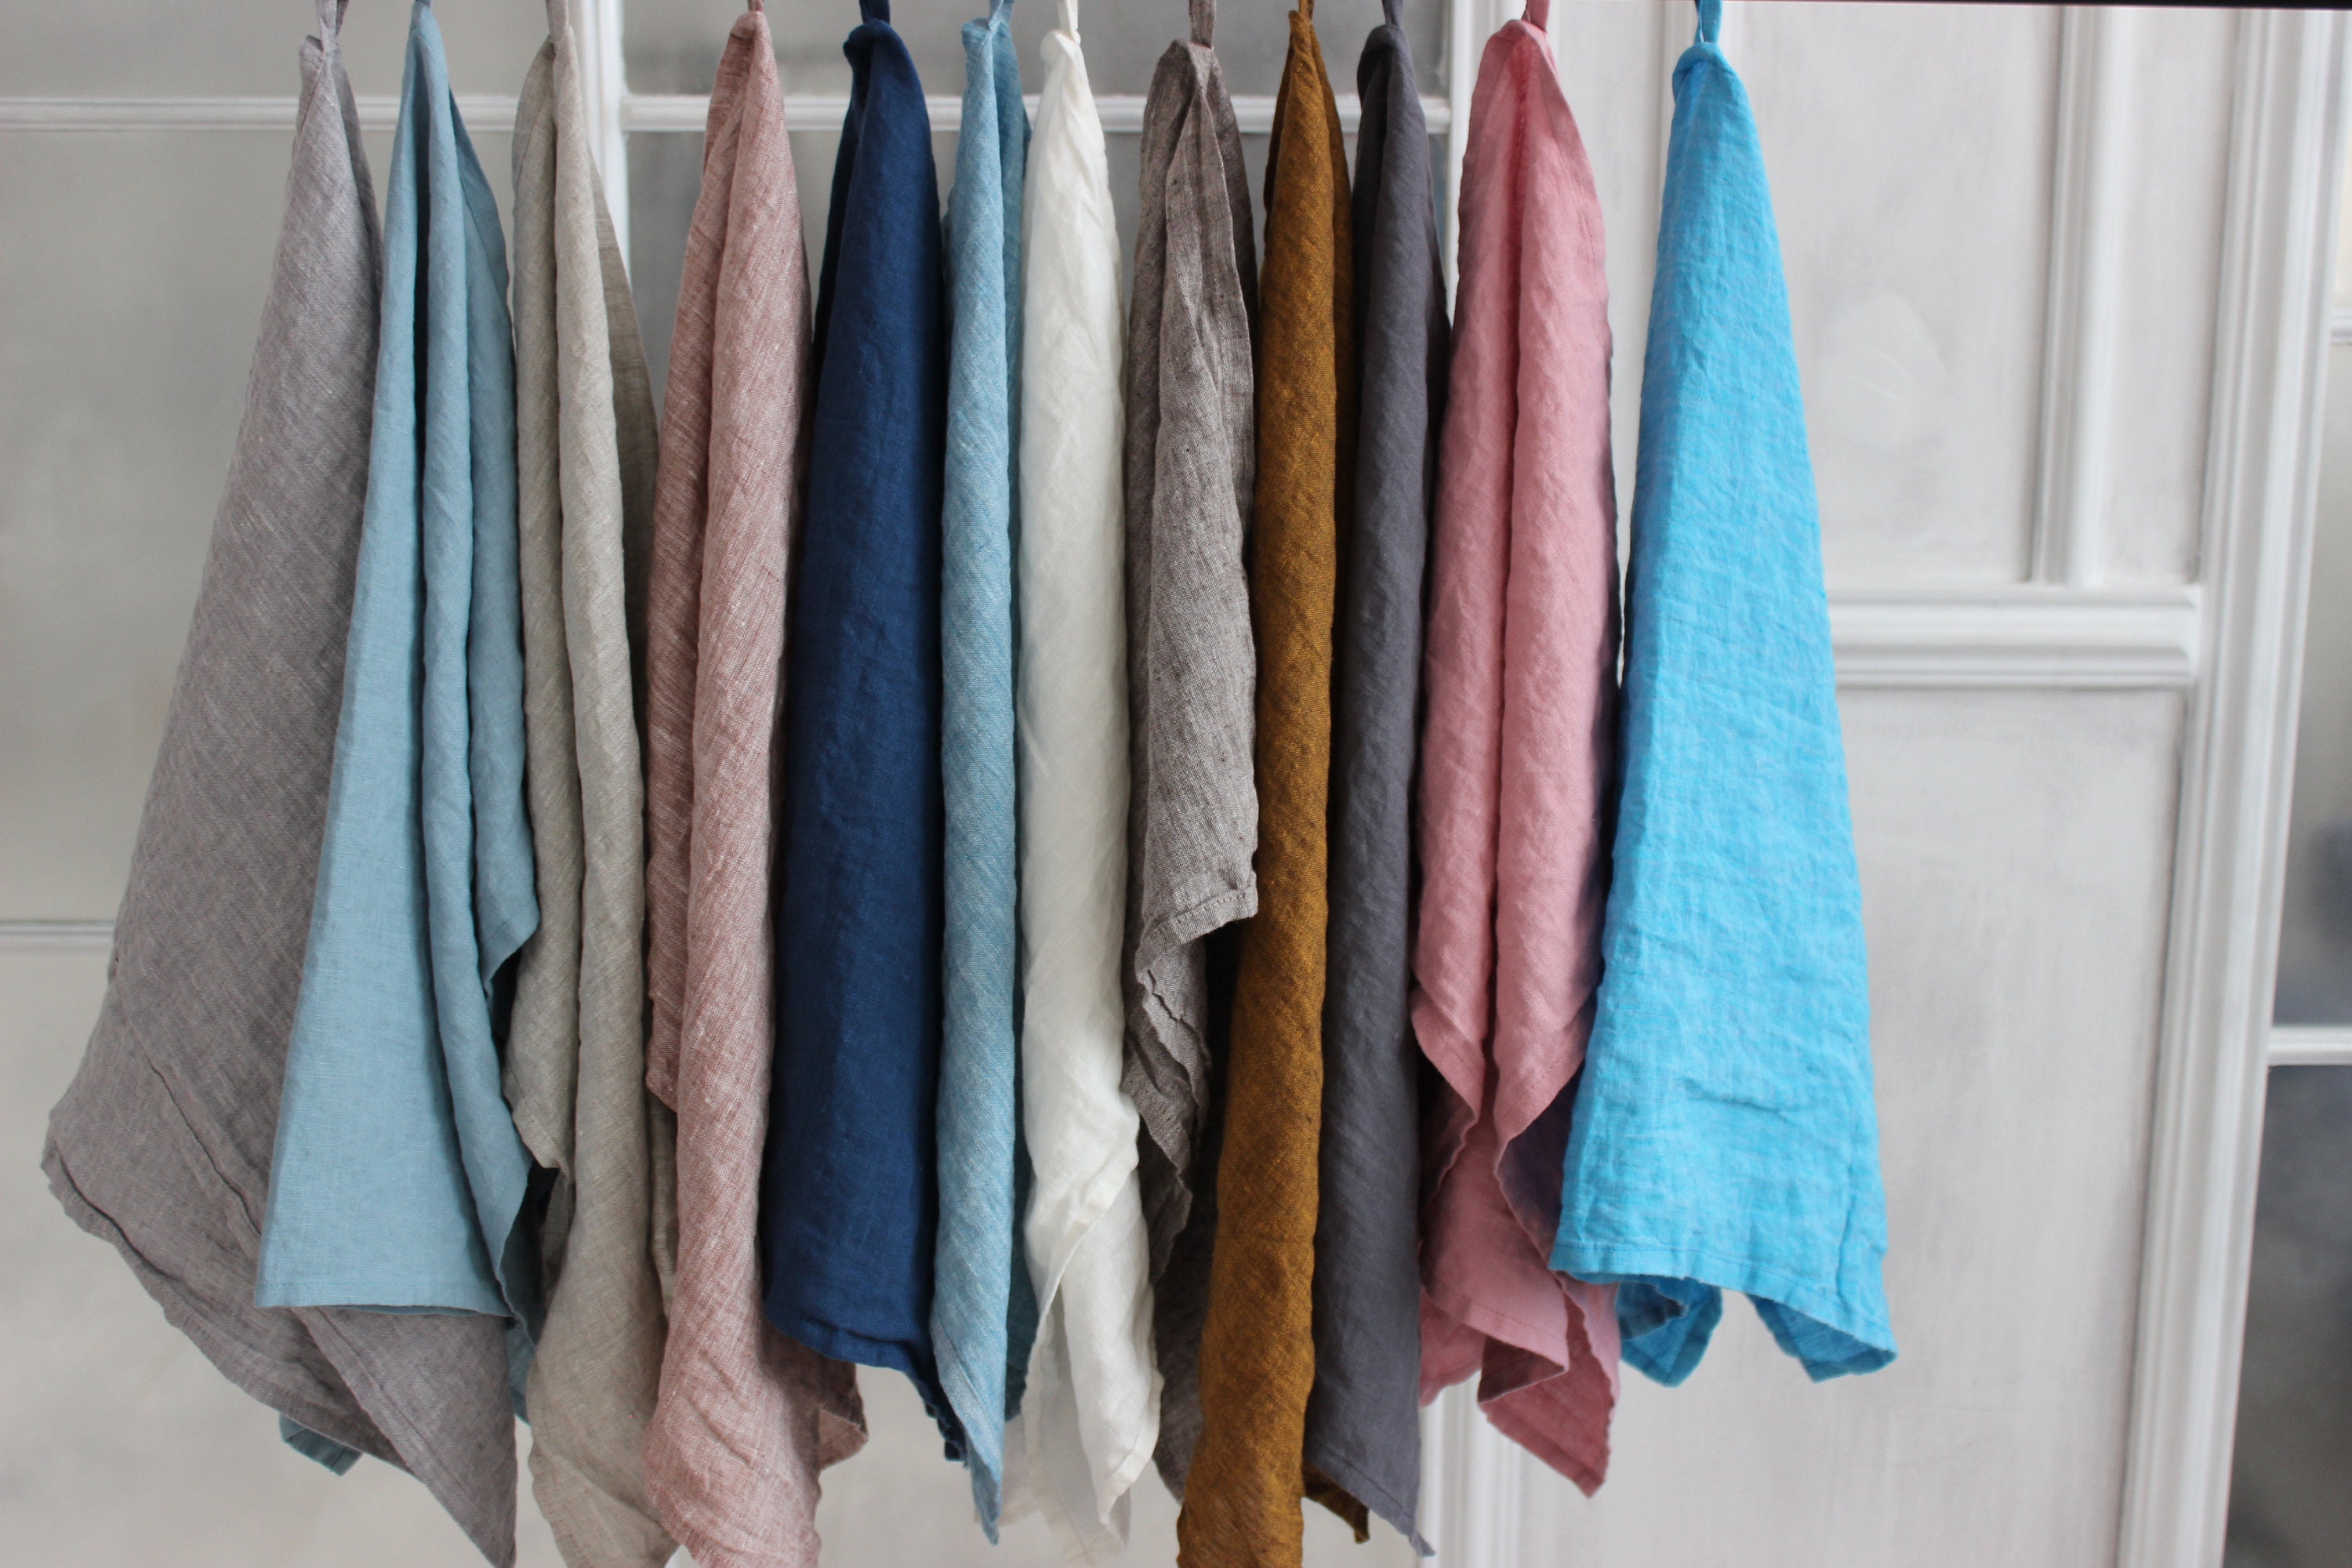 LANE LINEN Kitchen Towels Set - 100% Pure Cotton Dish Towels for